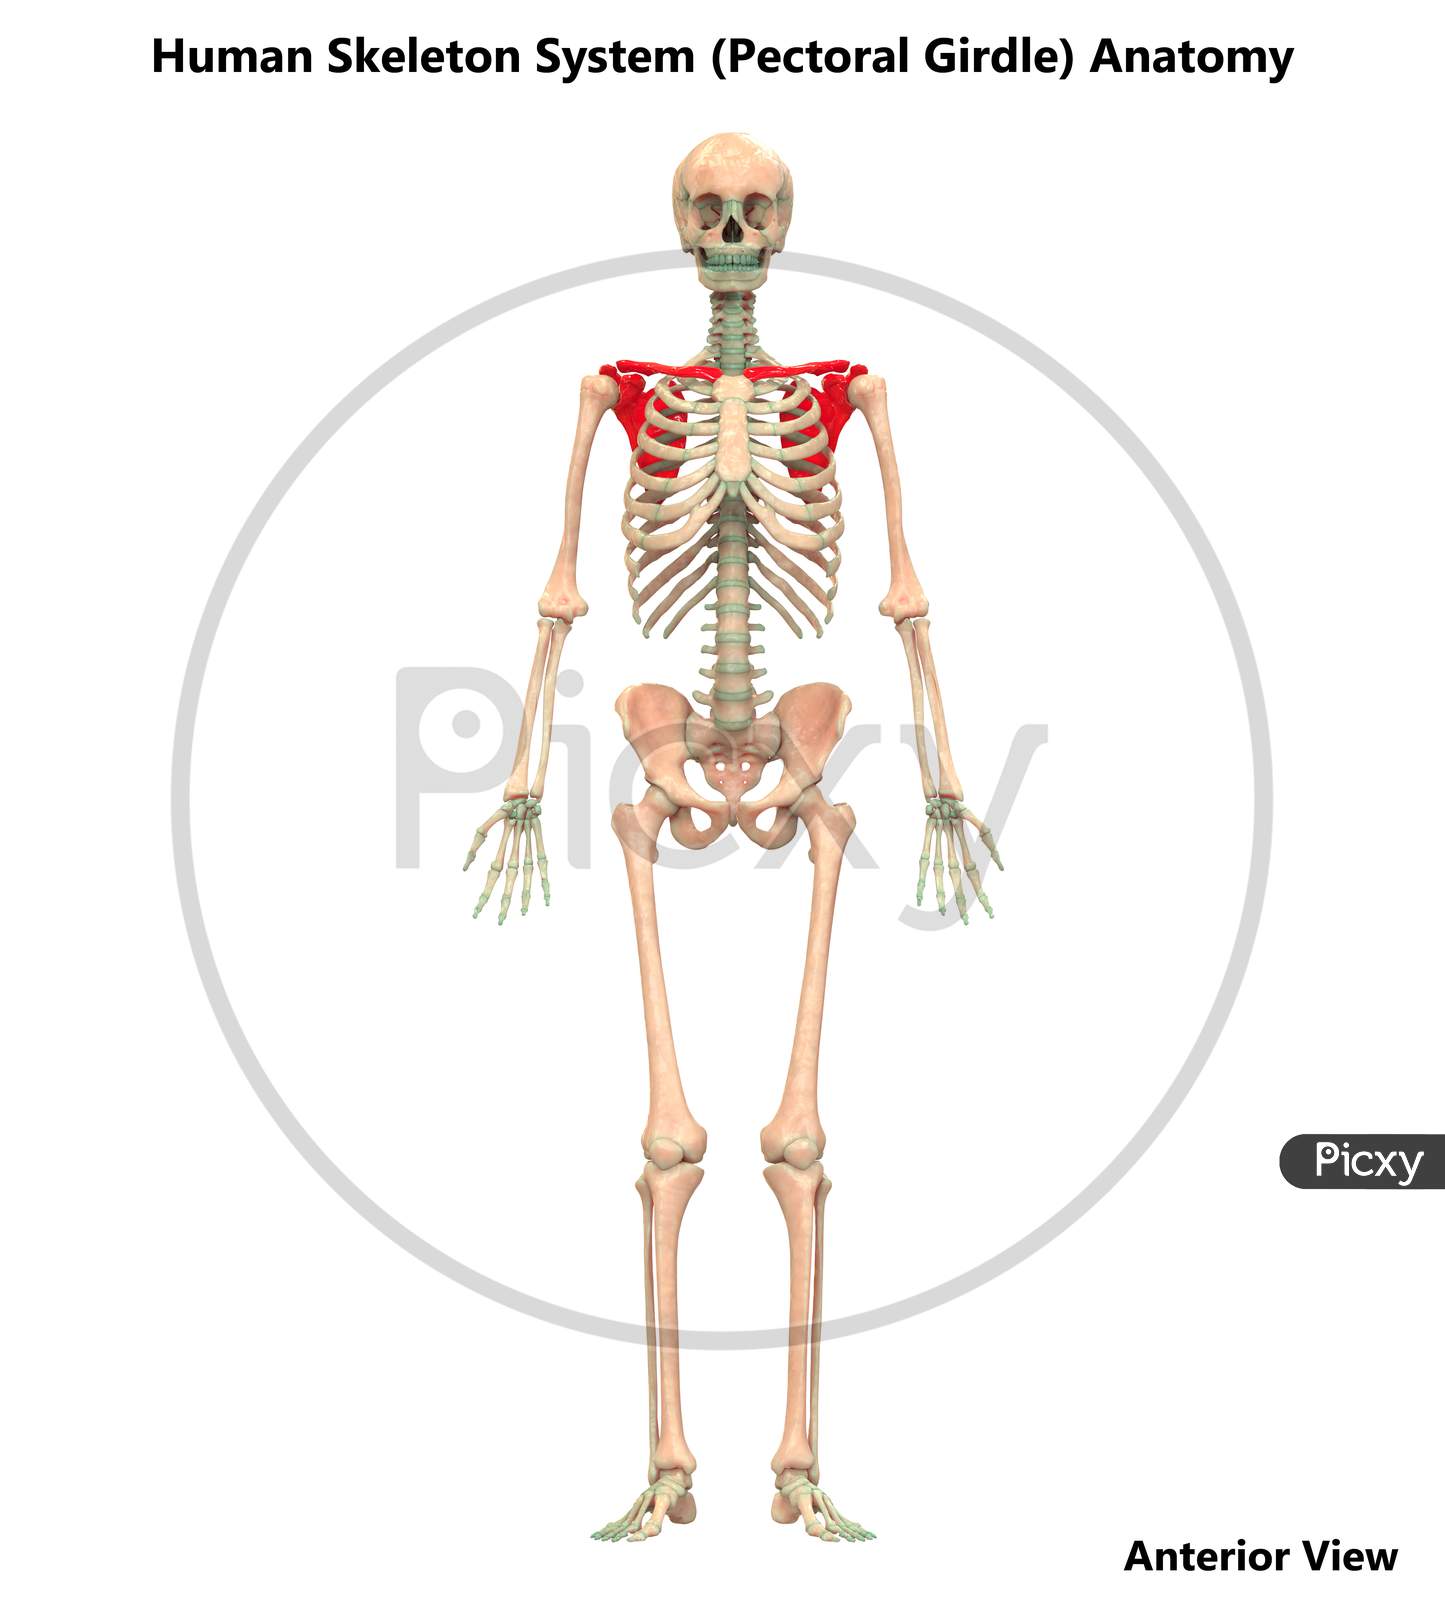 Human Skeleton System Anatomy (Pectoral Girdle)